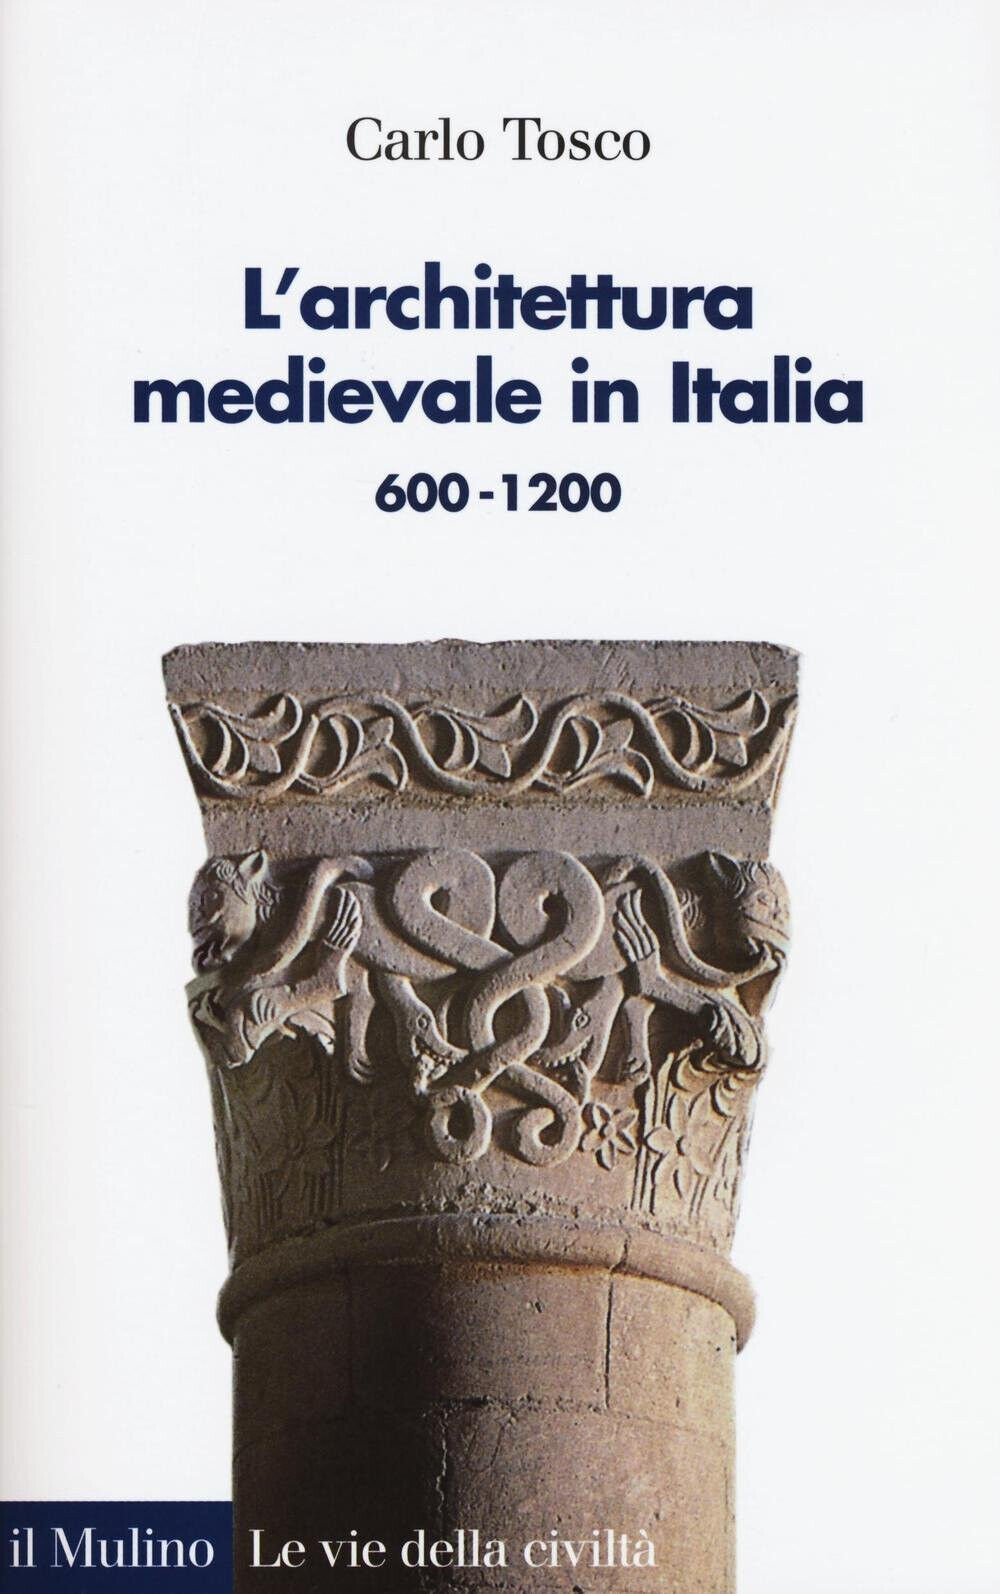 L' architettura medievale in Italia 600-1200 - Carlo Tosco - Il Mulino, 2016